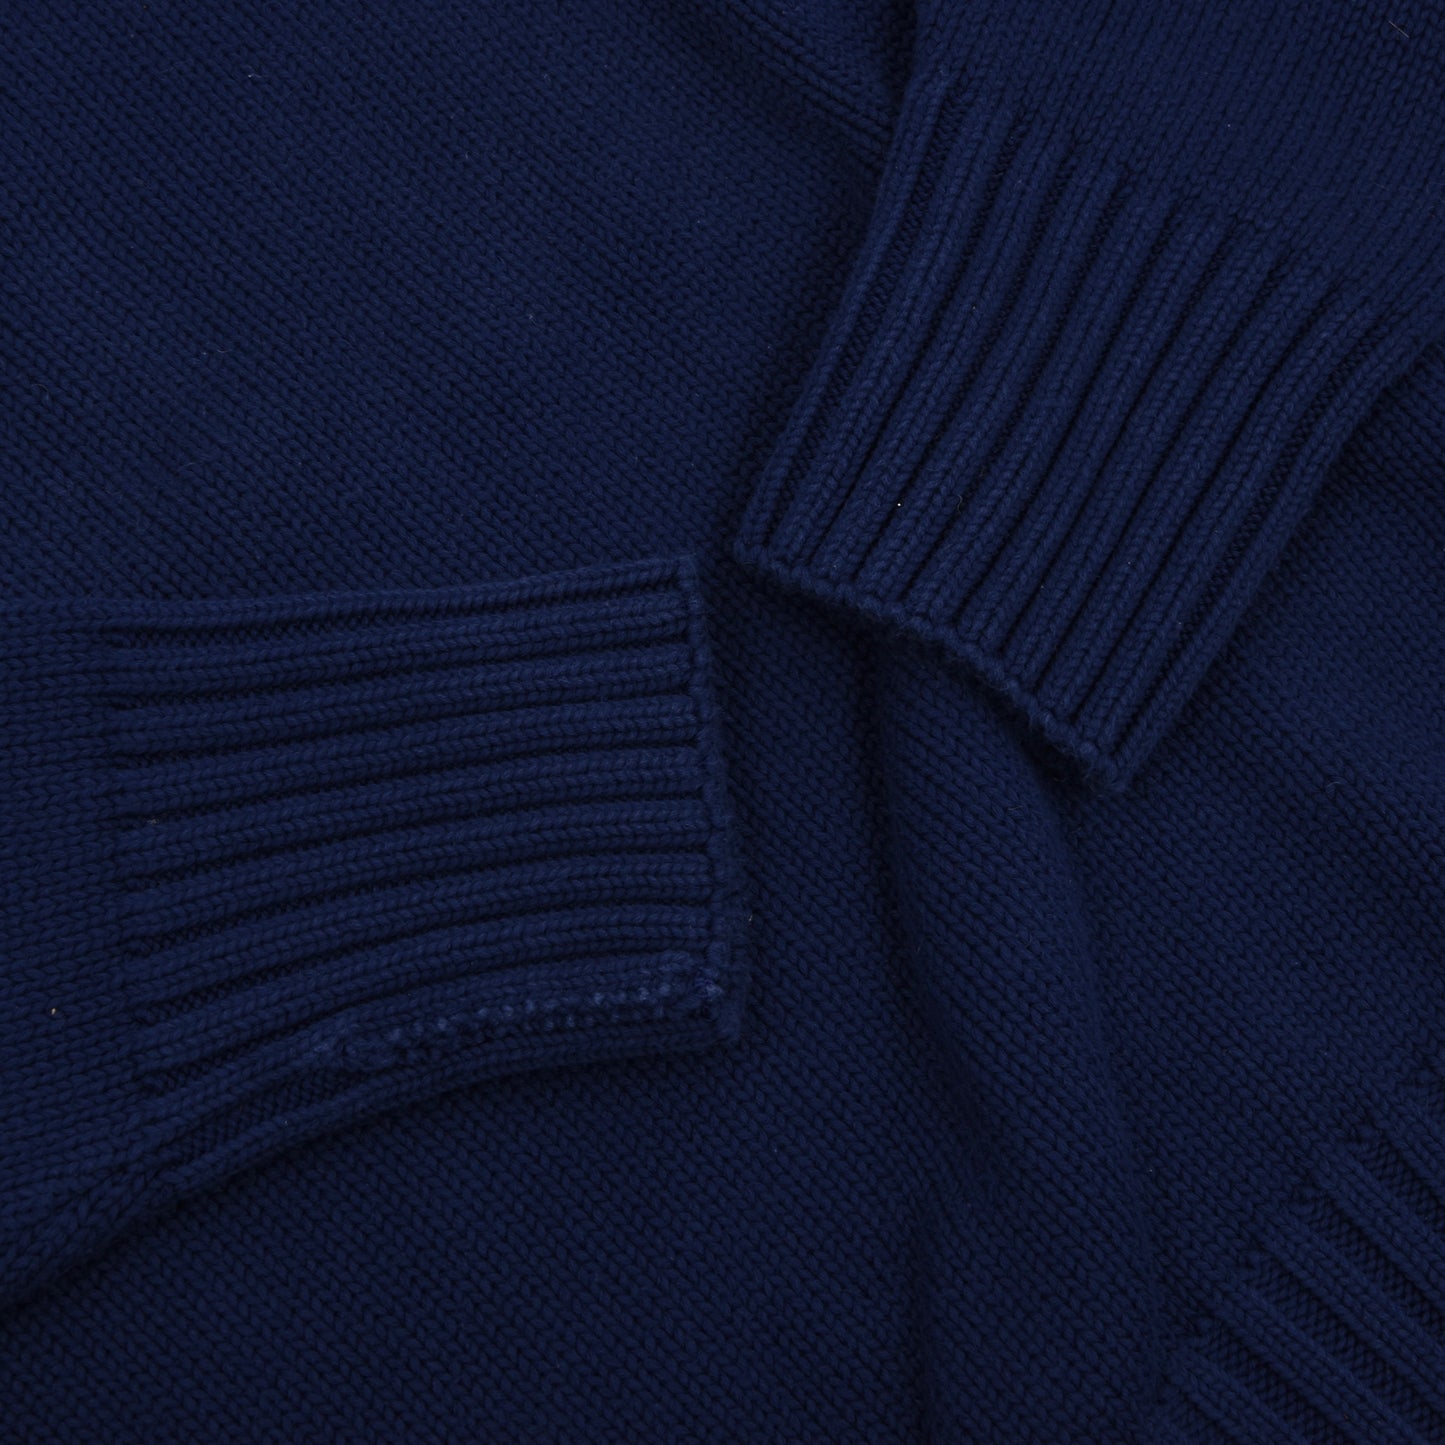 Polo Ralph Lauren Cotton Sweater Size M - Royal Blue